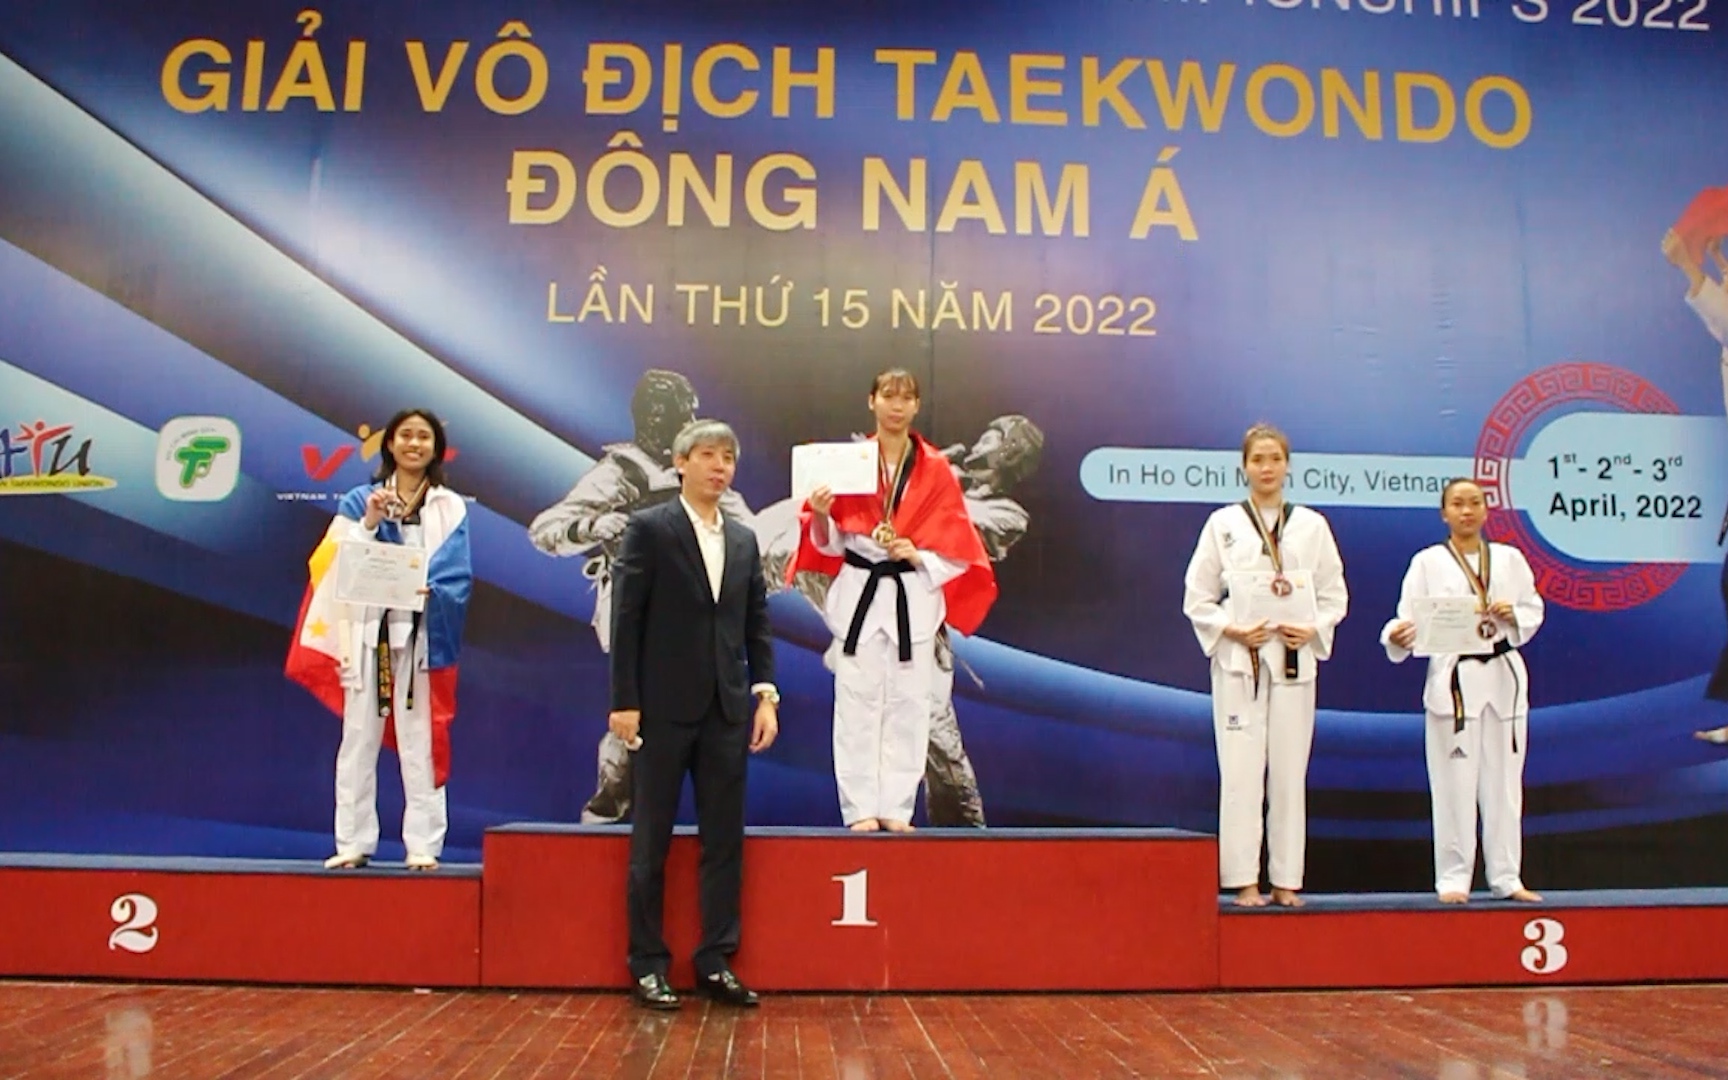 Trương Thị Kim Tuyền: niềm "hy vọng vàng" của Taekwondo Việt Nam